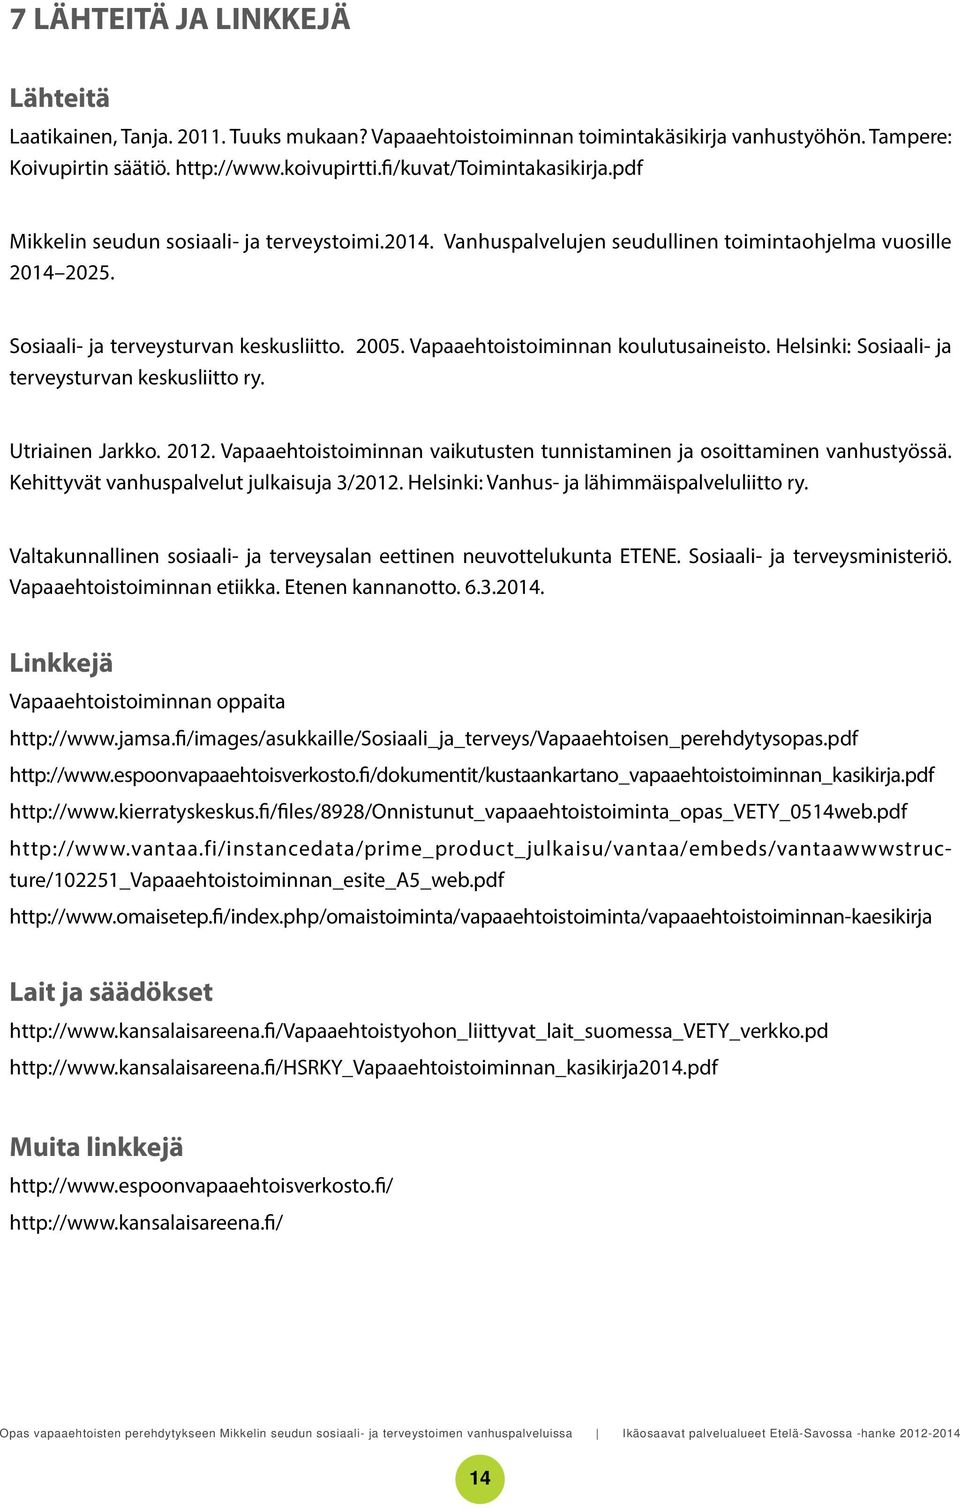 Vapaaehtoistoiminnan koulutusaineisto. Helsinki: Sosiaali- ja terveysturvan keskusliitto ry. Utriainen Jarkko. 2012. Vapaaehtoistoiminnan vaikutusten tunnistaminen ja osoittaminen vanhustyössä.